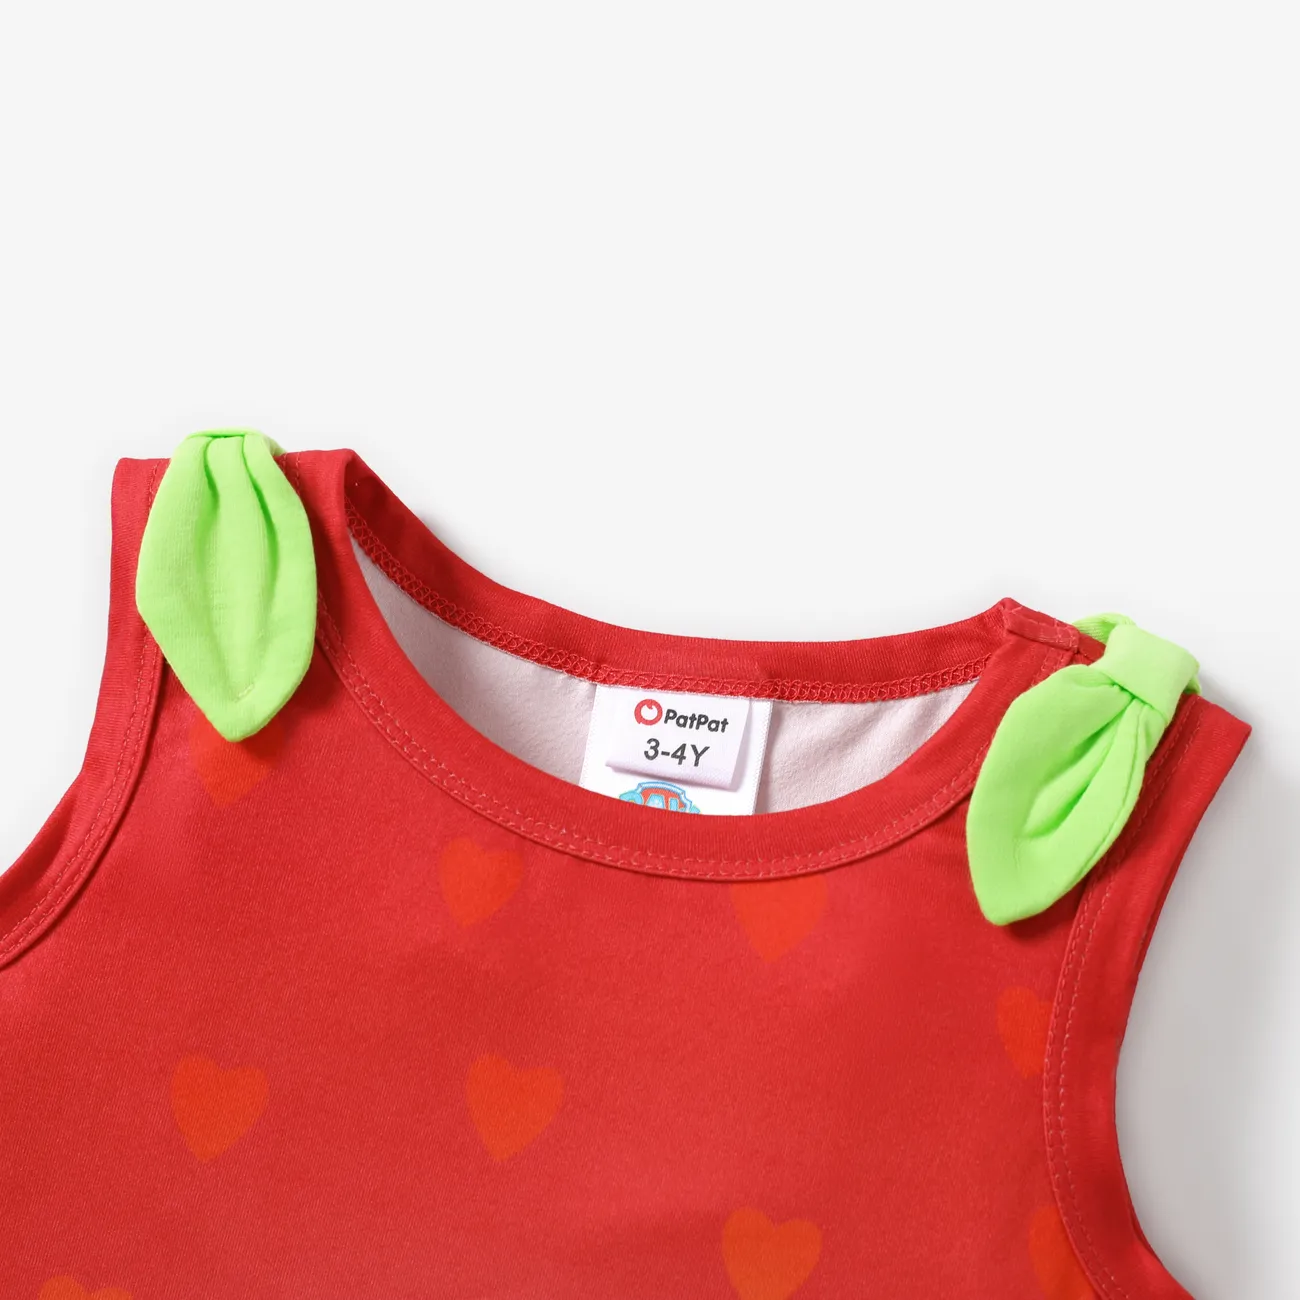 Helfer auf vier Pfoten Ostern Kleinkinder Mädchen Hypertaktil Kindlich Erdbeere Kleider rot big image 1